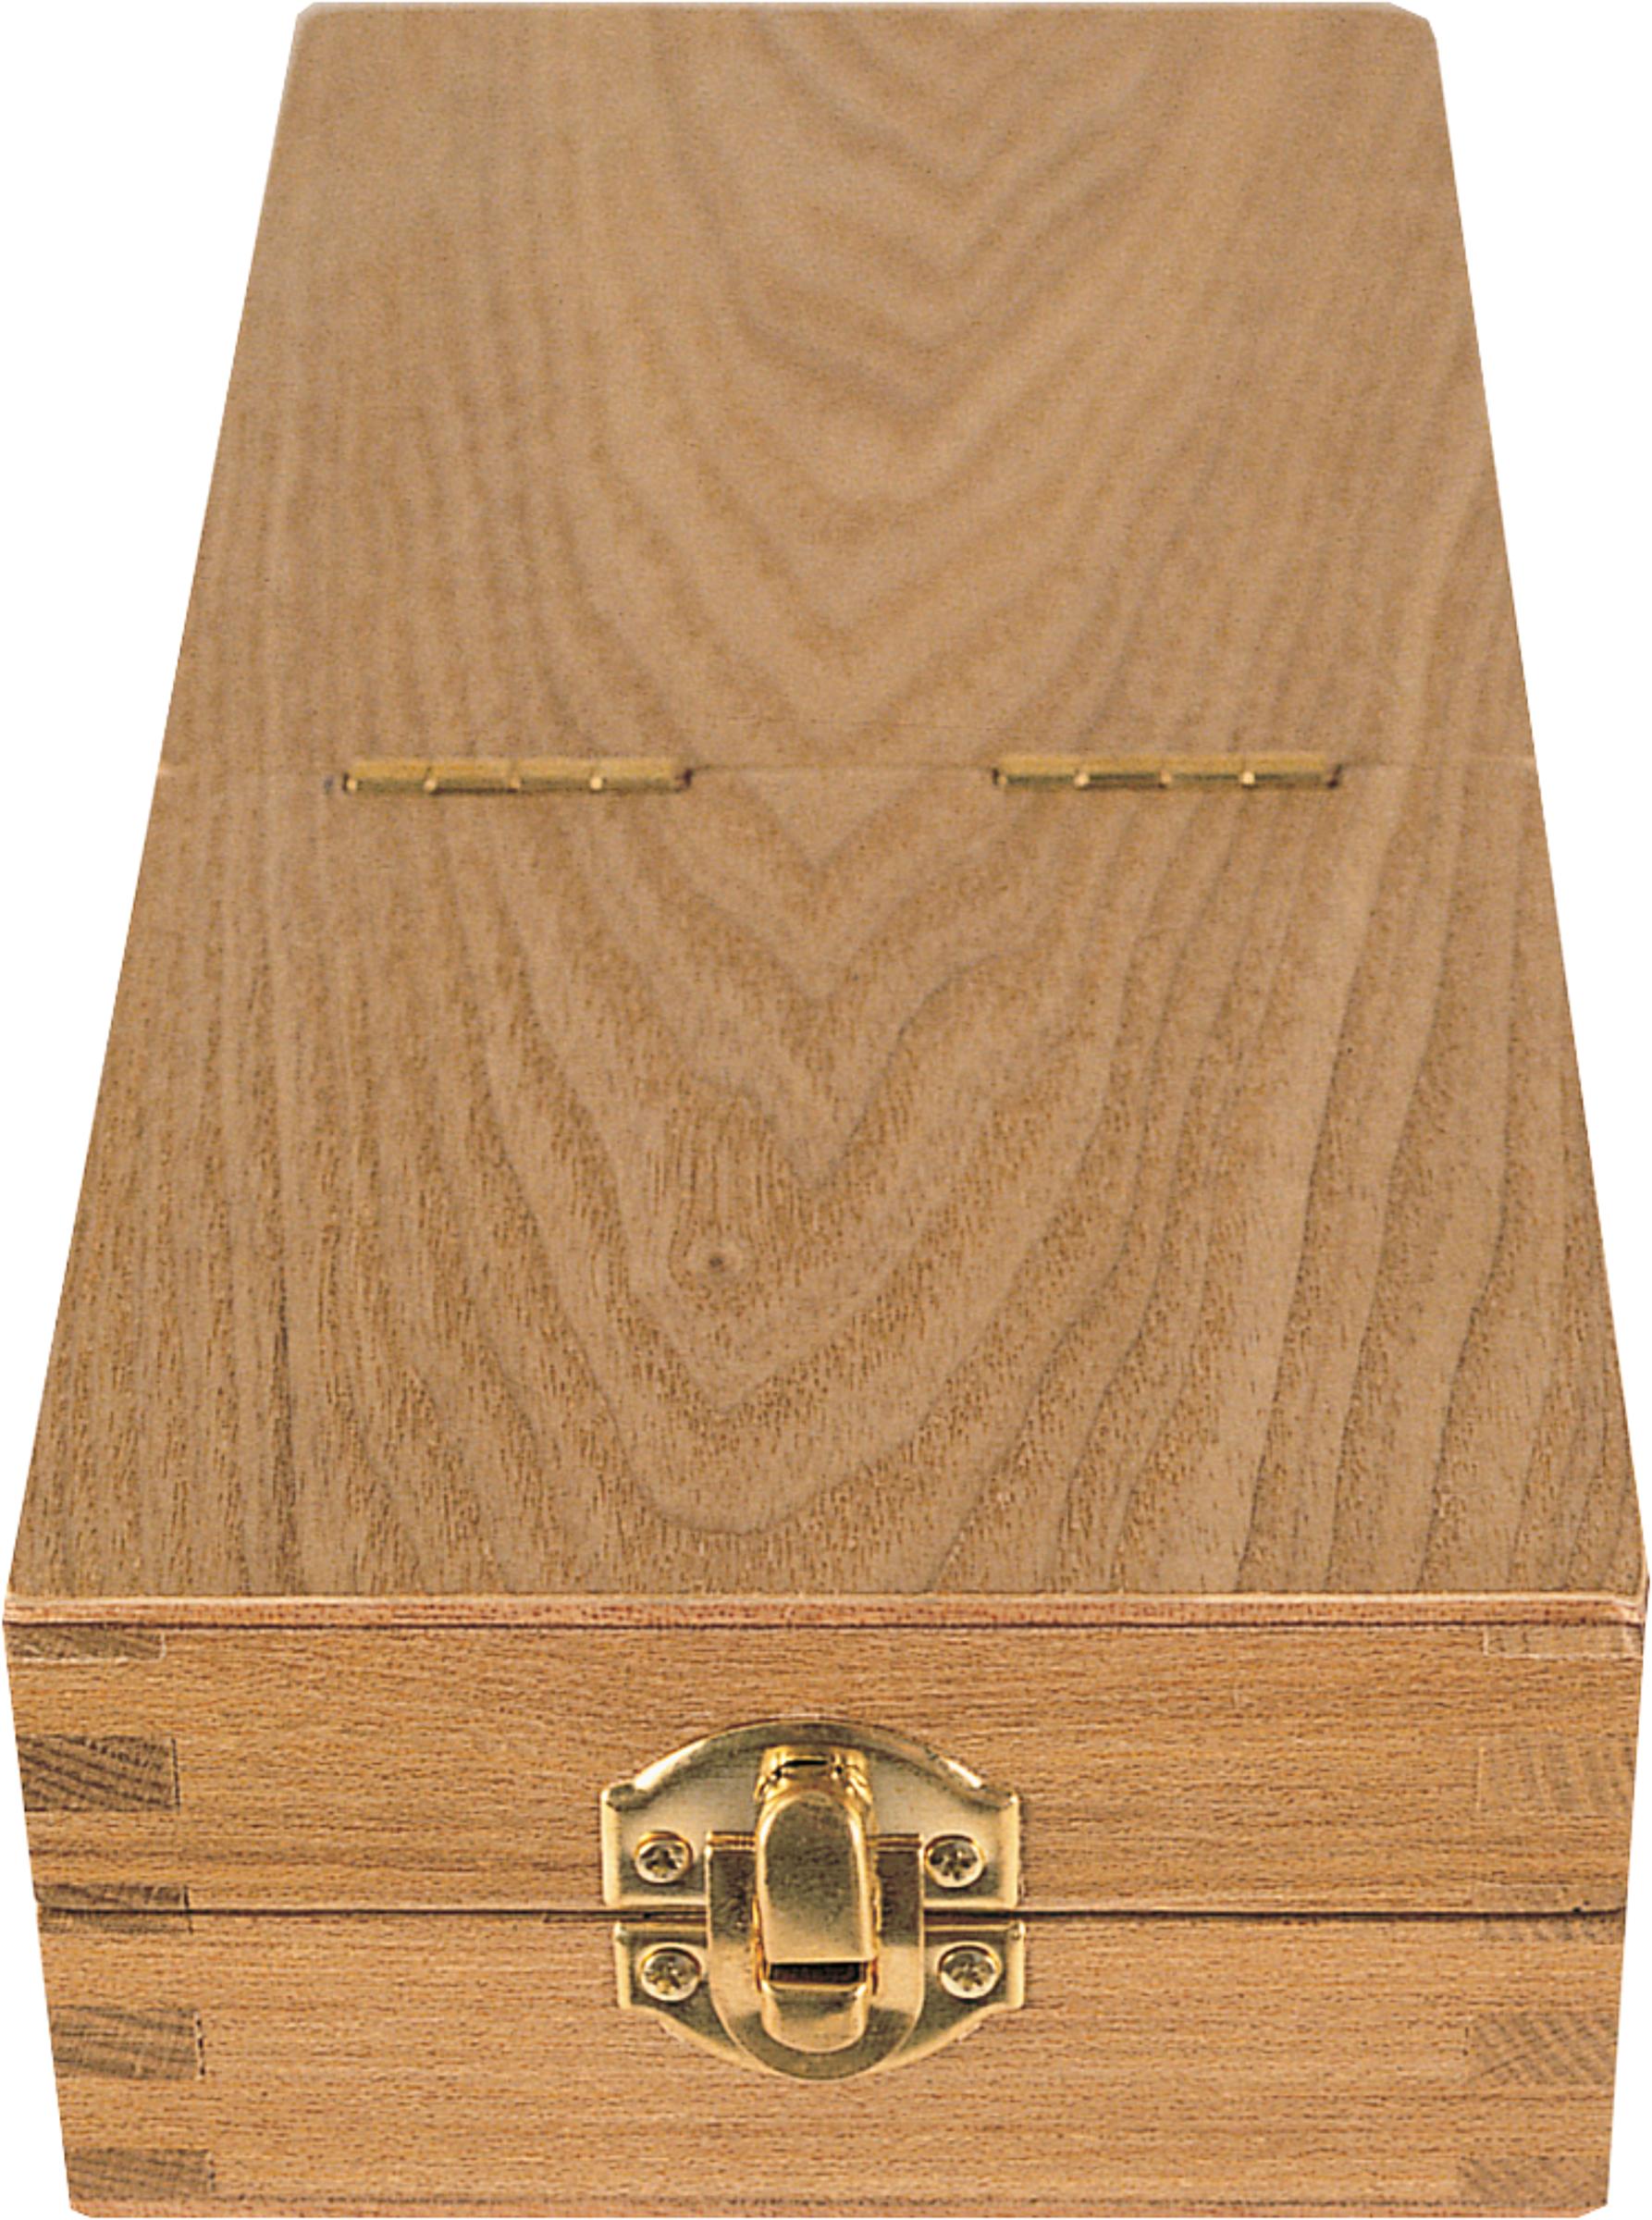 Pinsel-Box - Praktische Box zum Aufbewahren von Modellagepinseln. 